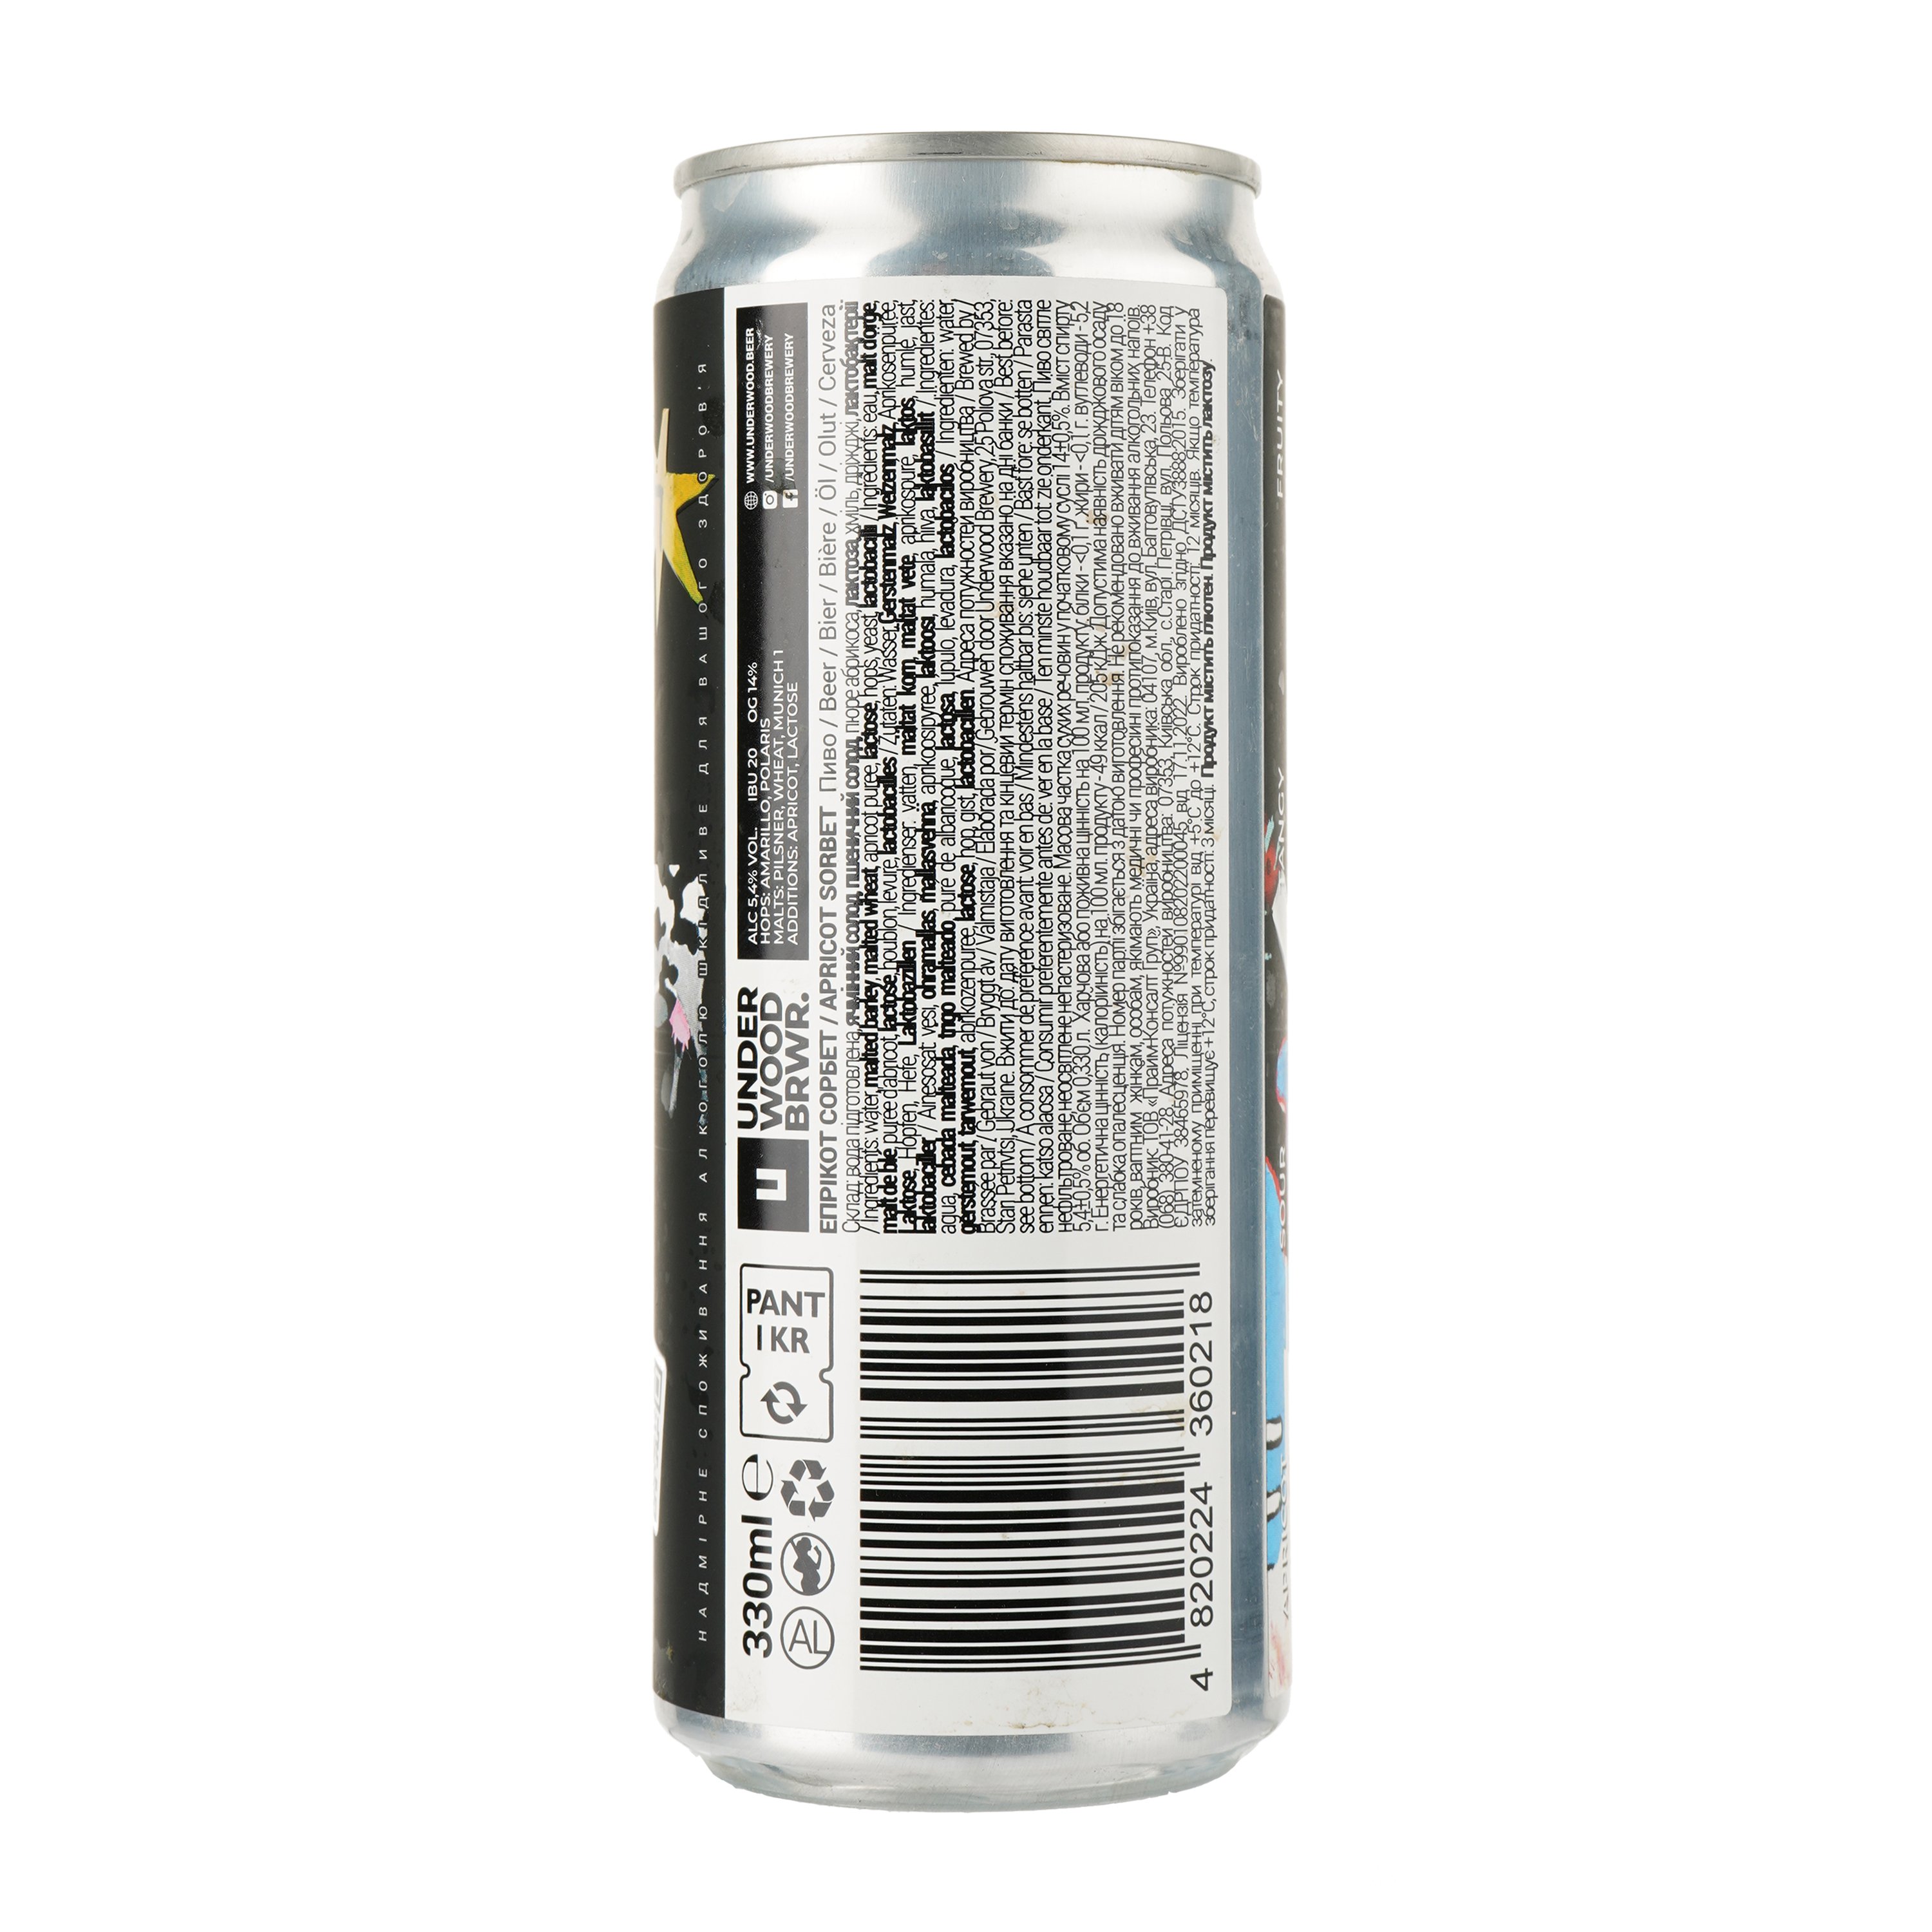 Пиво Underwood Brewery Apricot Sorbet, светлое, 5,4%, ж/б, 0,33 л (862187) - фото 4